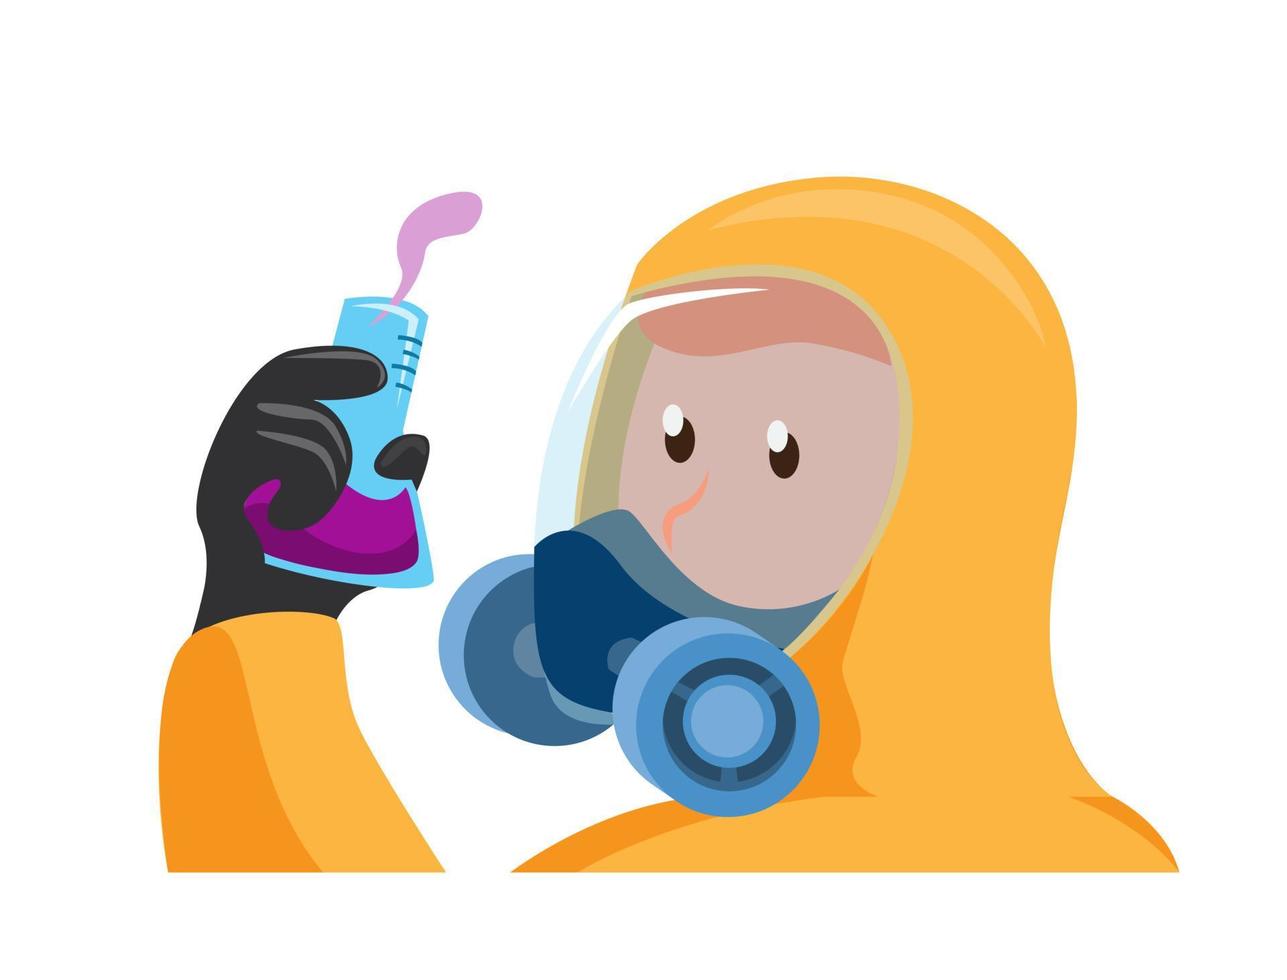 man in biohazard beschermende outfit met lab glazen reageerbuis, wetenschapper met gasmasker pak voor giftige en chemische bescherming cartoon vlakke afbeelding vector